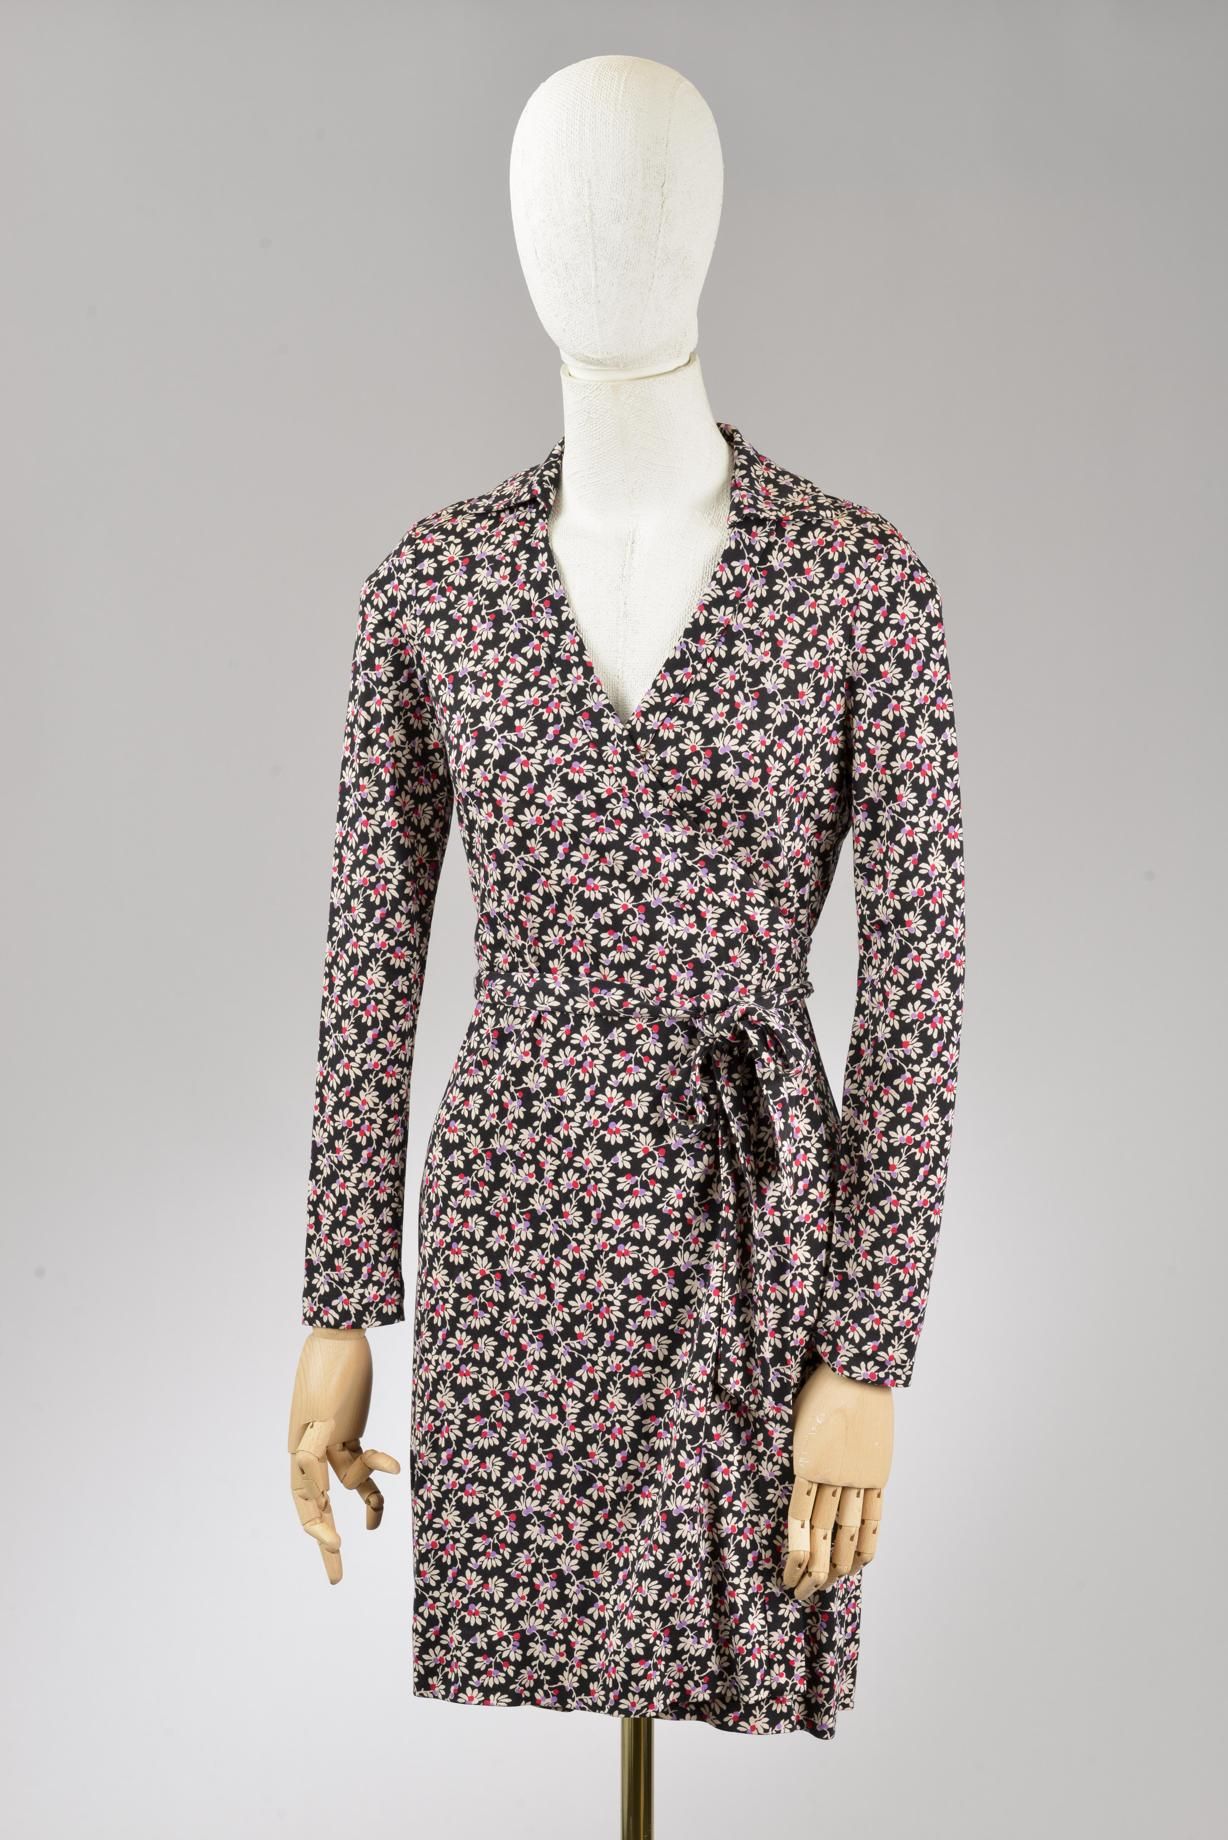 Null *尺寸2 DVF - Diane Von Fürstenberg

套装包括。

-弹性丝质裹身裙，型号为 "DVF Jeannie"，黑色背景上印有&hellip;